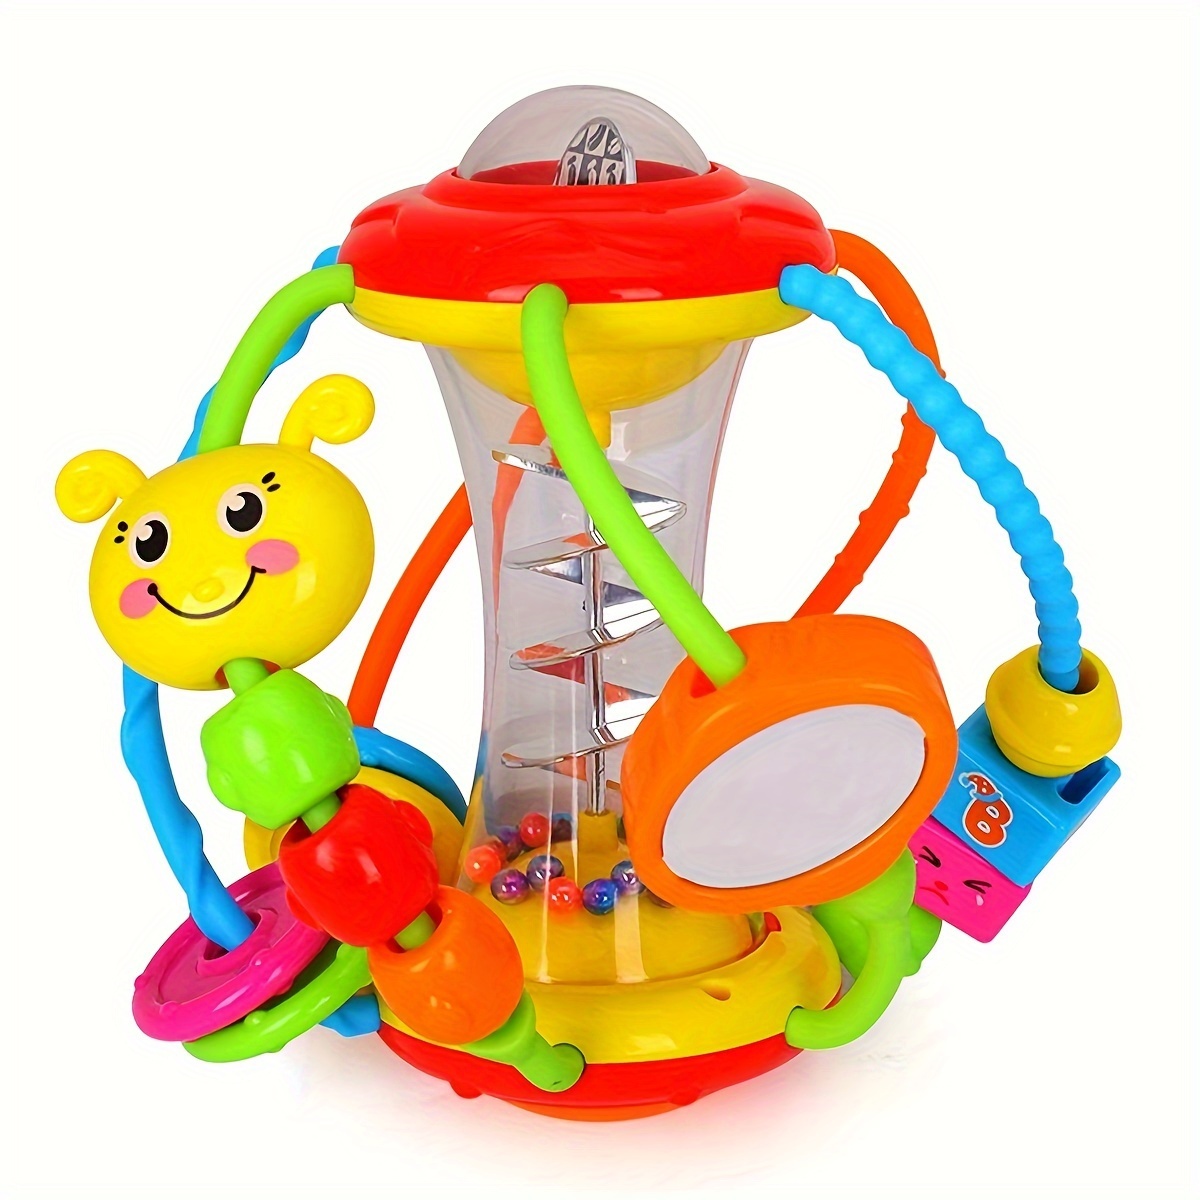 Juguete Musical Montessori para bebés, proyector giratorio del océano,  juguetes educativos tempranos con luz Musical para